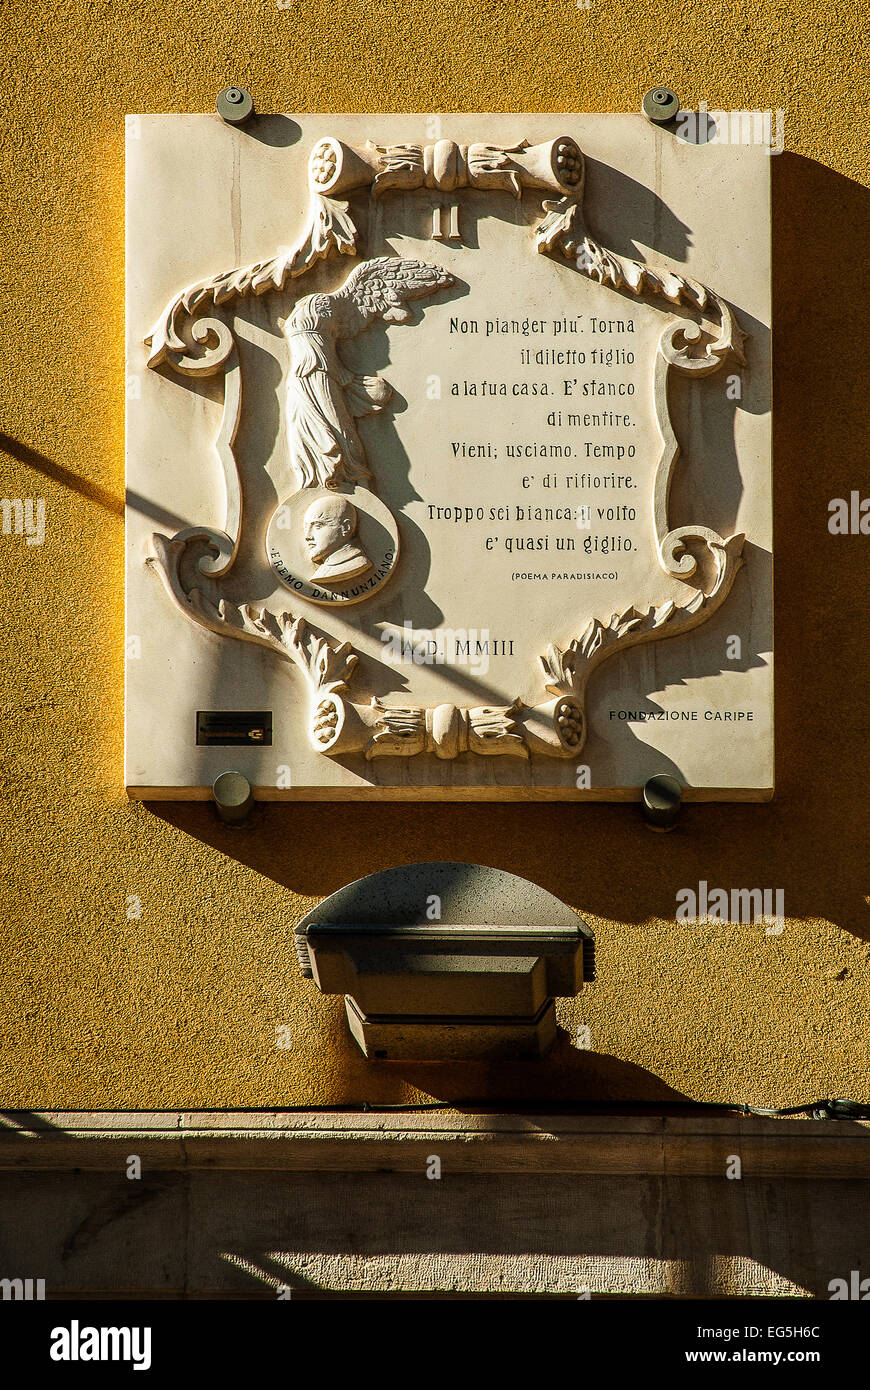 Abruzzo , Pescara , città natale di Gabriele D' Annunzio, una lapide con il poema celeste. Foto Stock